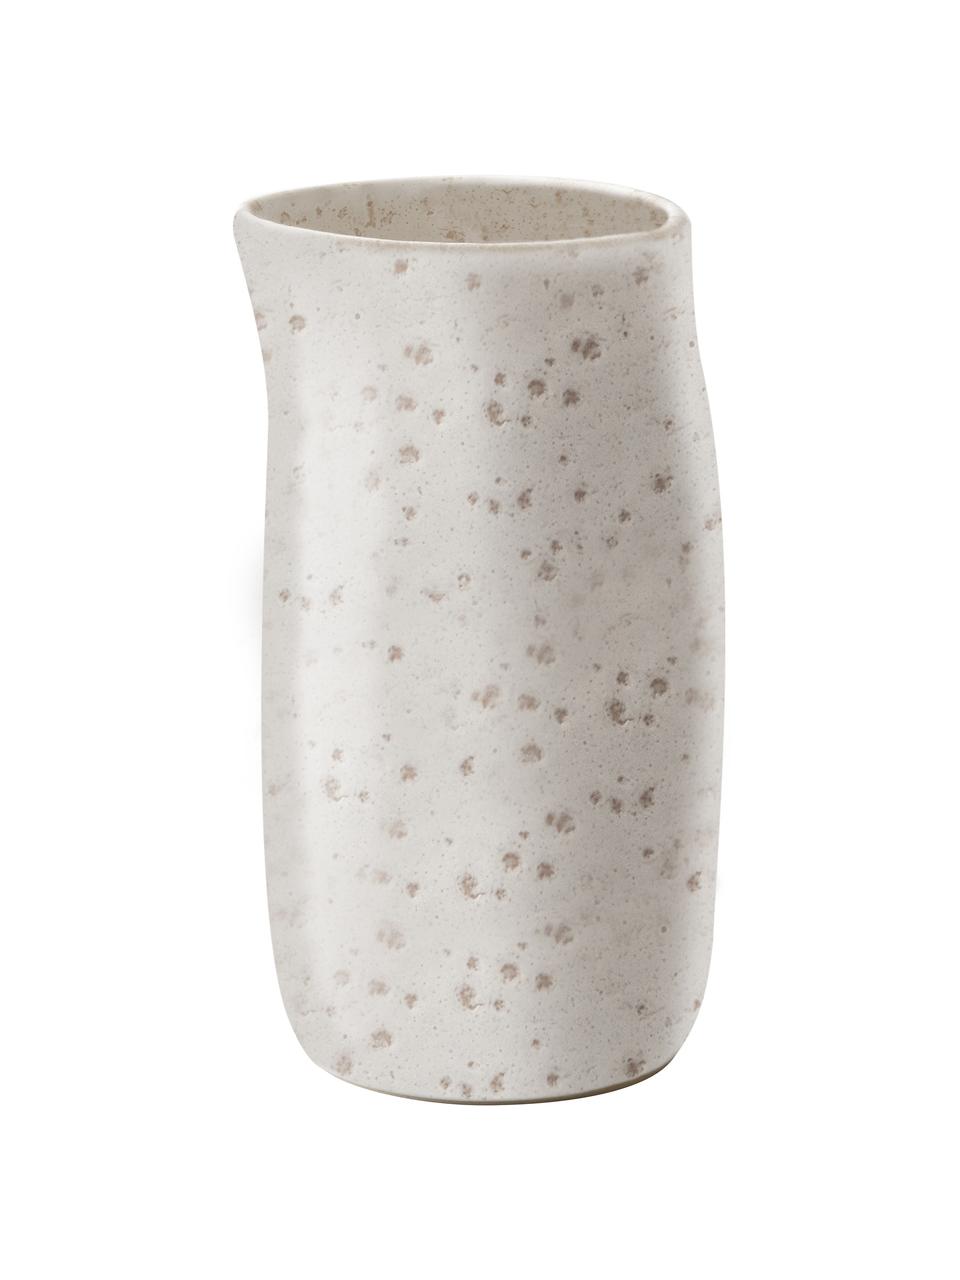 Melkkan Elegant van keramiek in wit, 200 ml, Keramiek, Wit, Ø 7 x H 13 cm